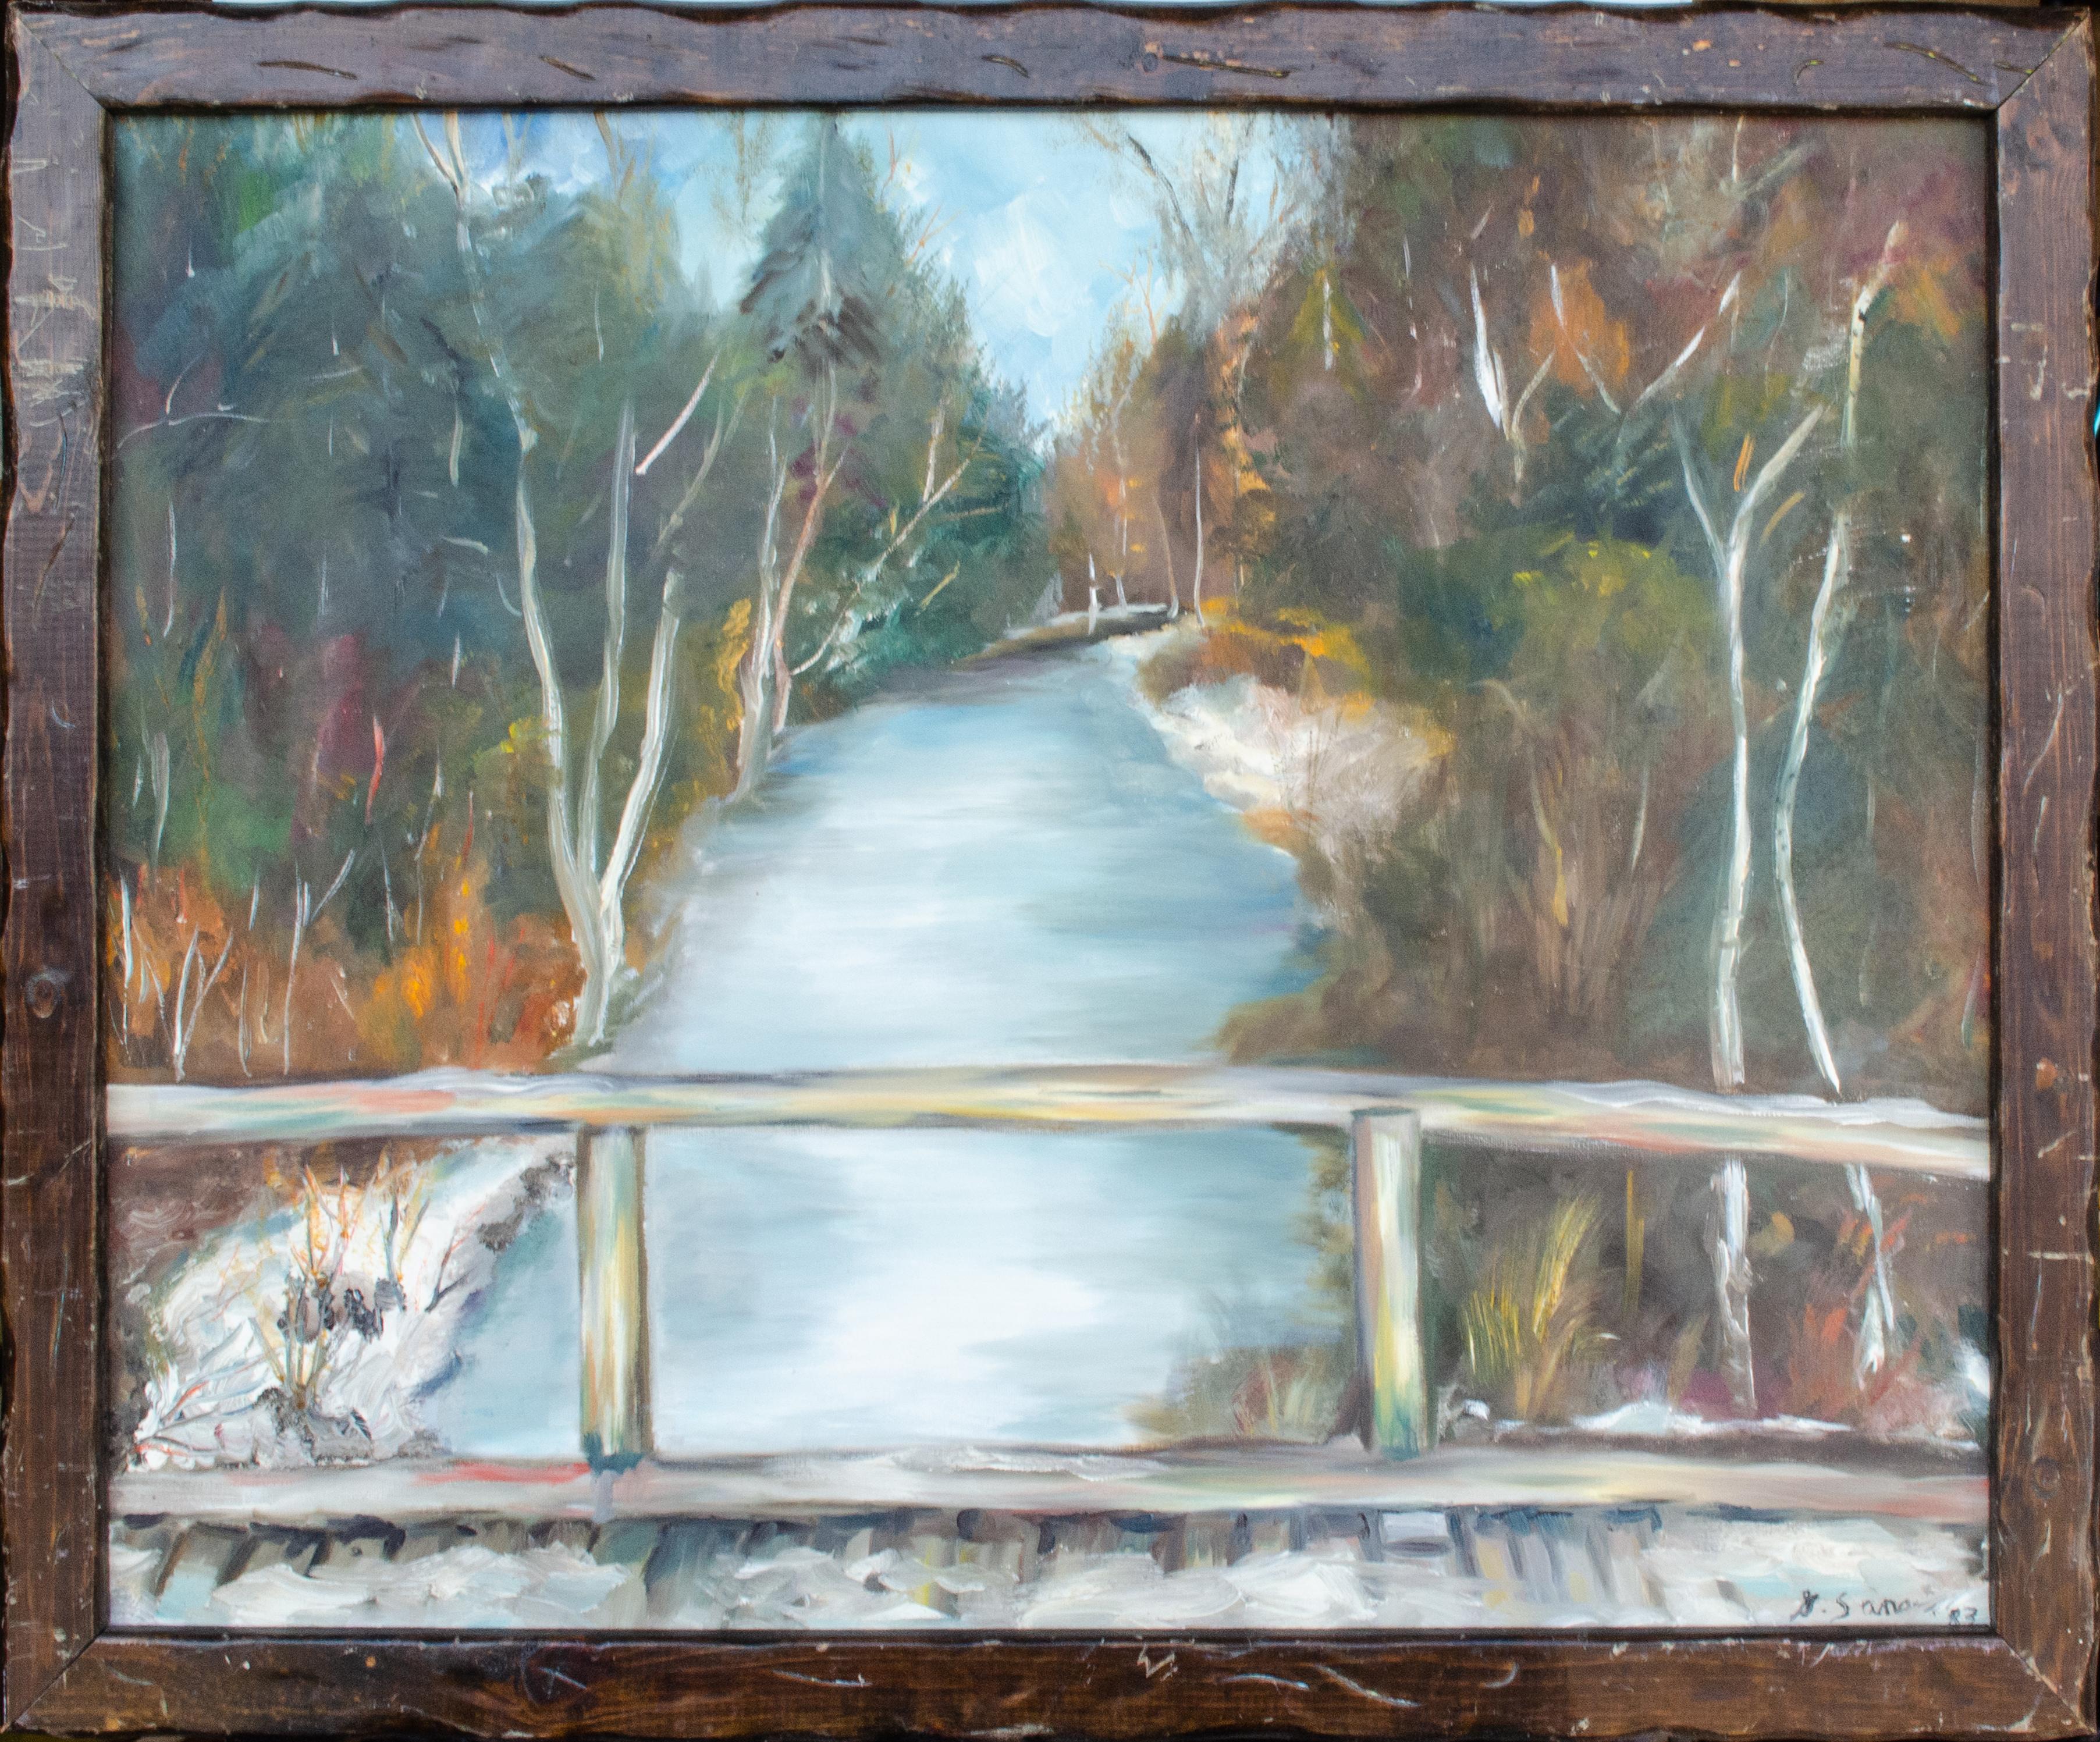 Unknown Landscape Painting – 1983 Amerikanisch-impressionistische Flusslandschaft von Geraldine Sanger